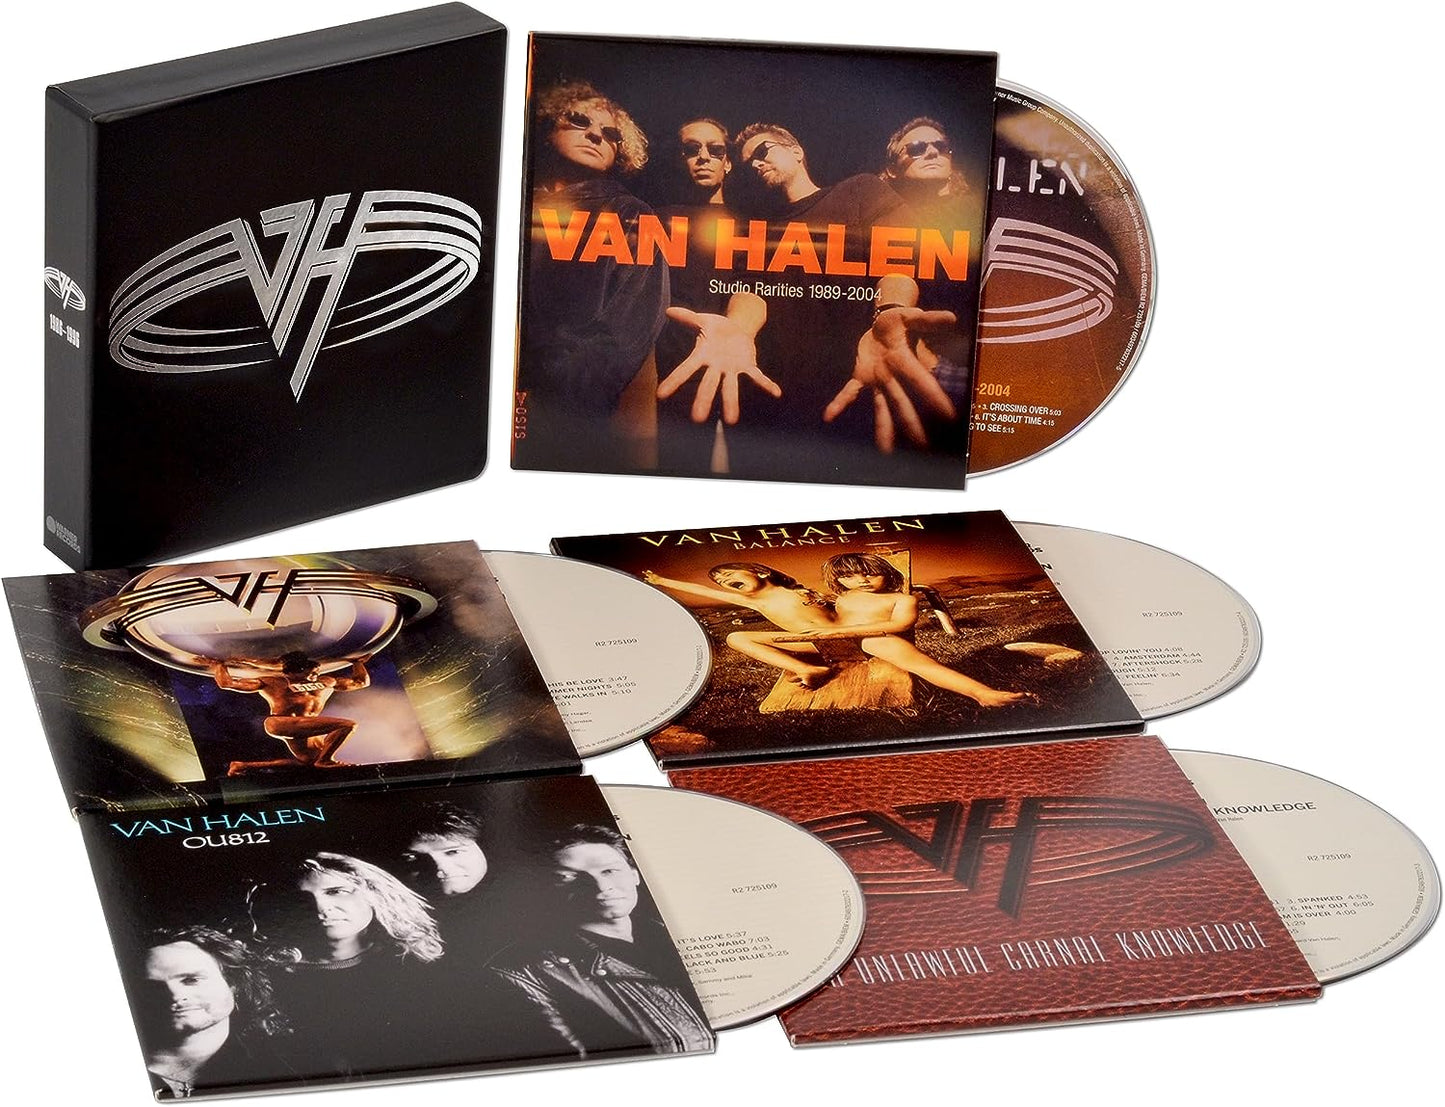 5CD - Van Halen - The Collection II